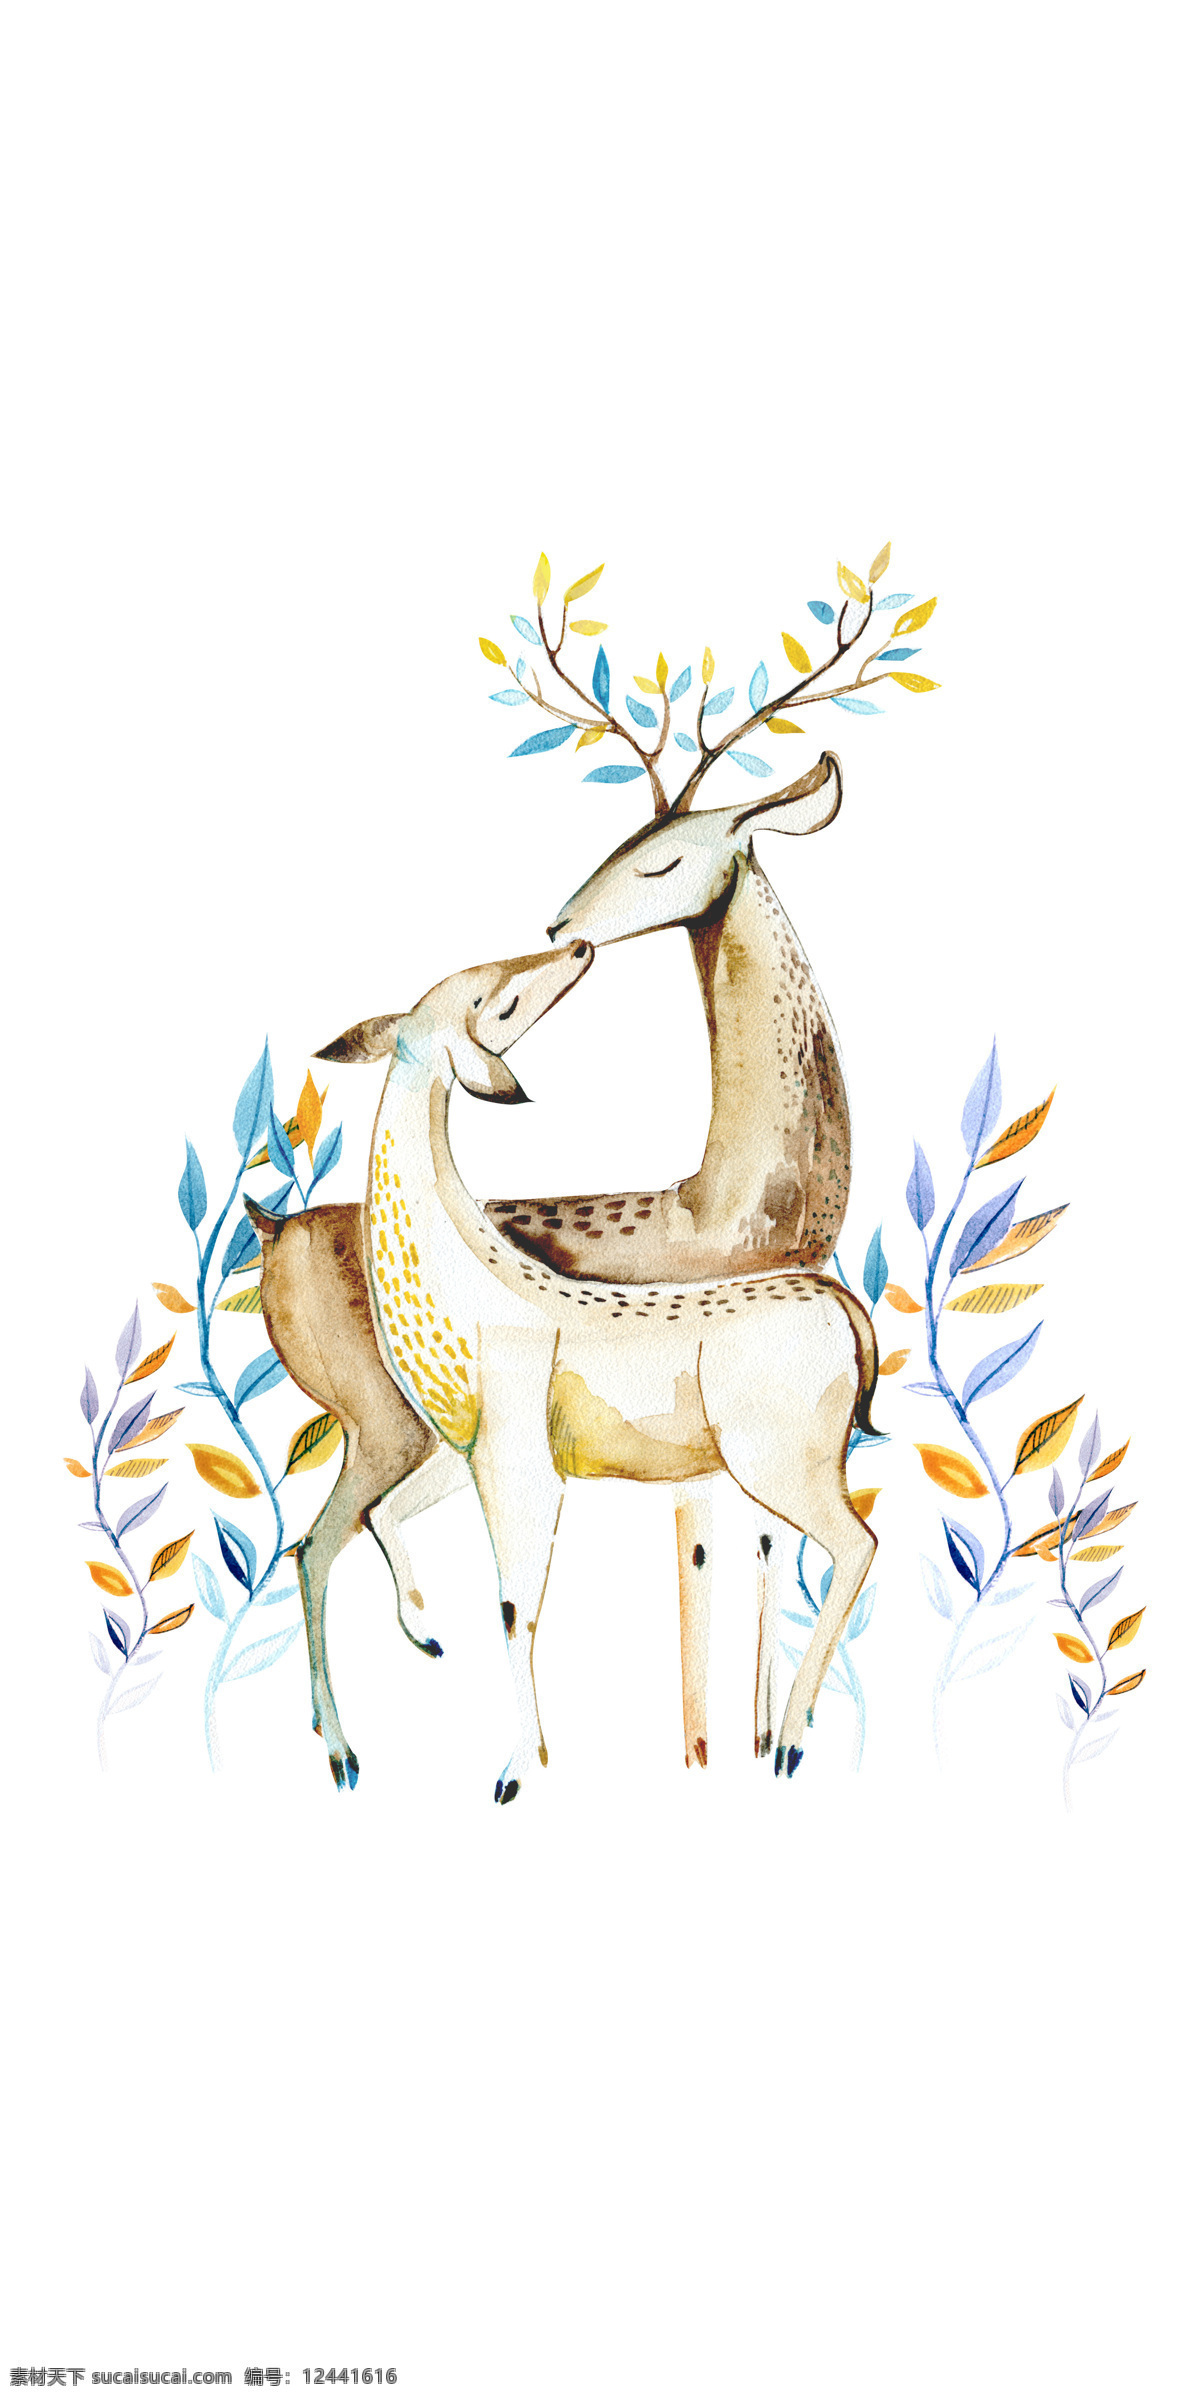 梅花鹿 装饰画 背景 墙 背景墙 麋鹿 床头画 生物世界 野生动物